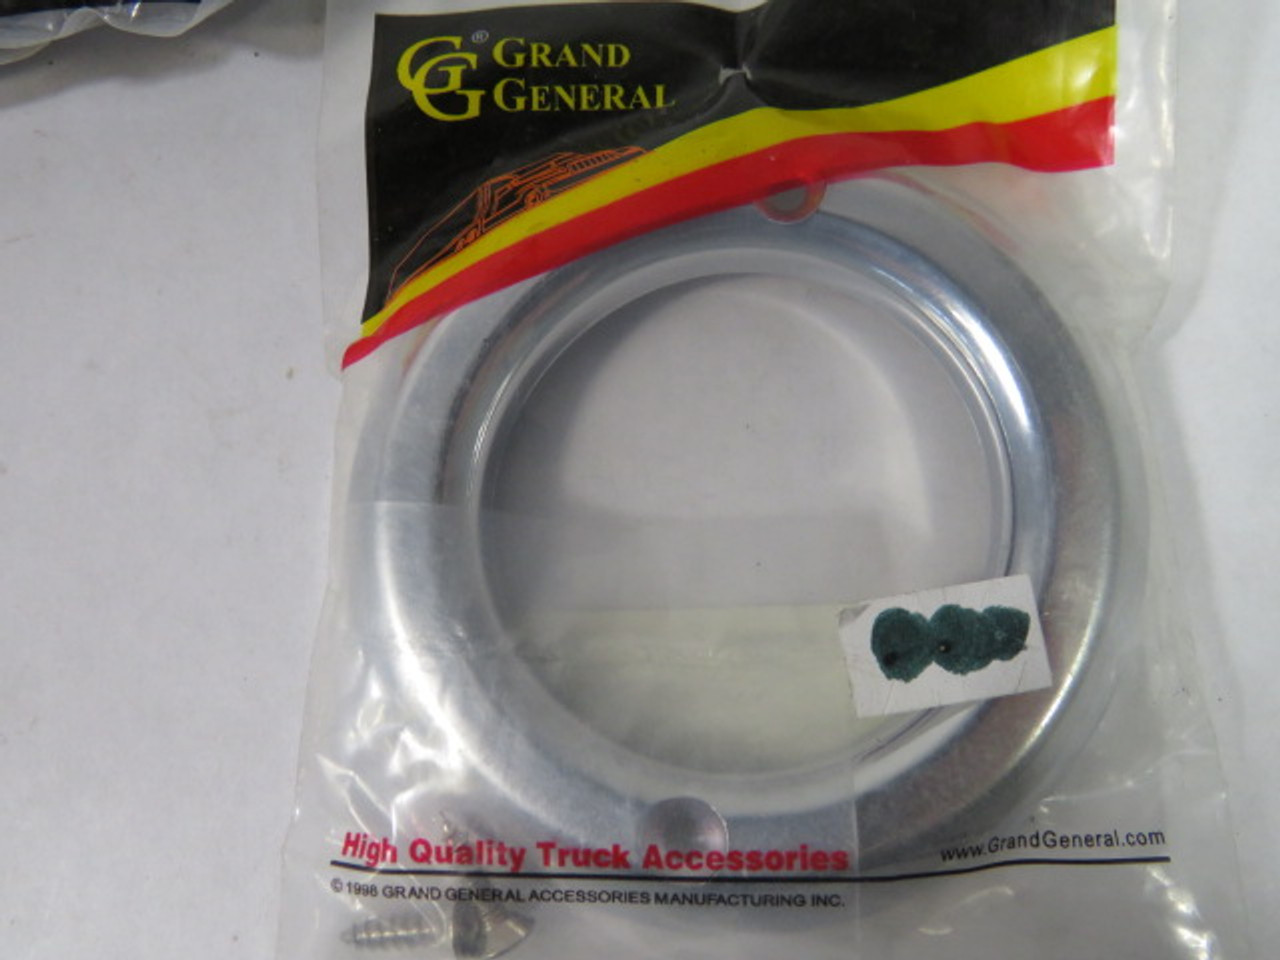 Grand General 80729 Plastic Grommet Cover For 2" Light Lot of 4 ! NWB !